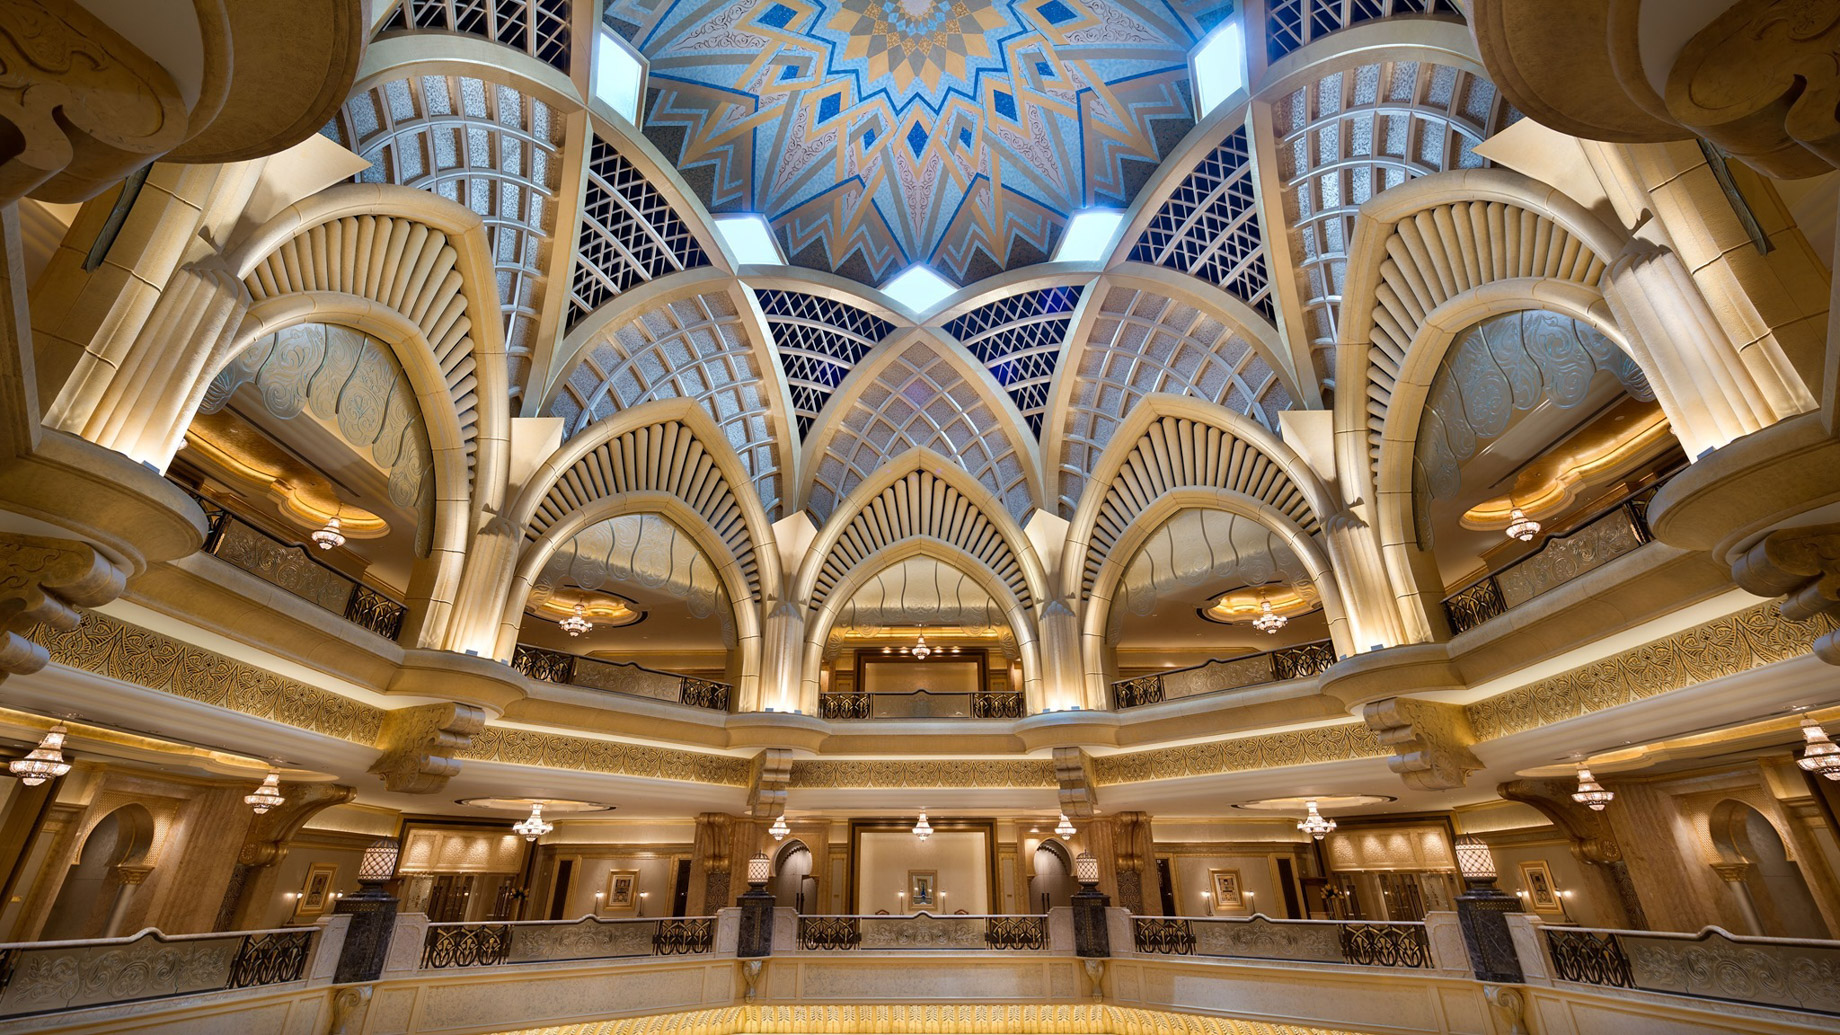 Emirates Palace Abu Dhabi Hotel - Abu Dhabi, UAE - Ceiling Dome